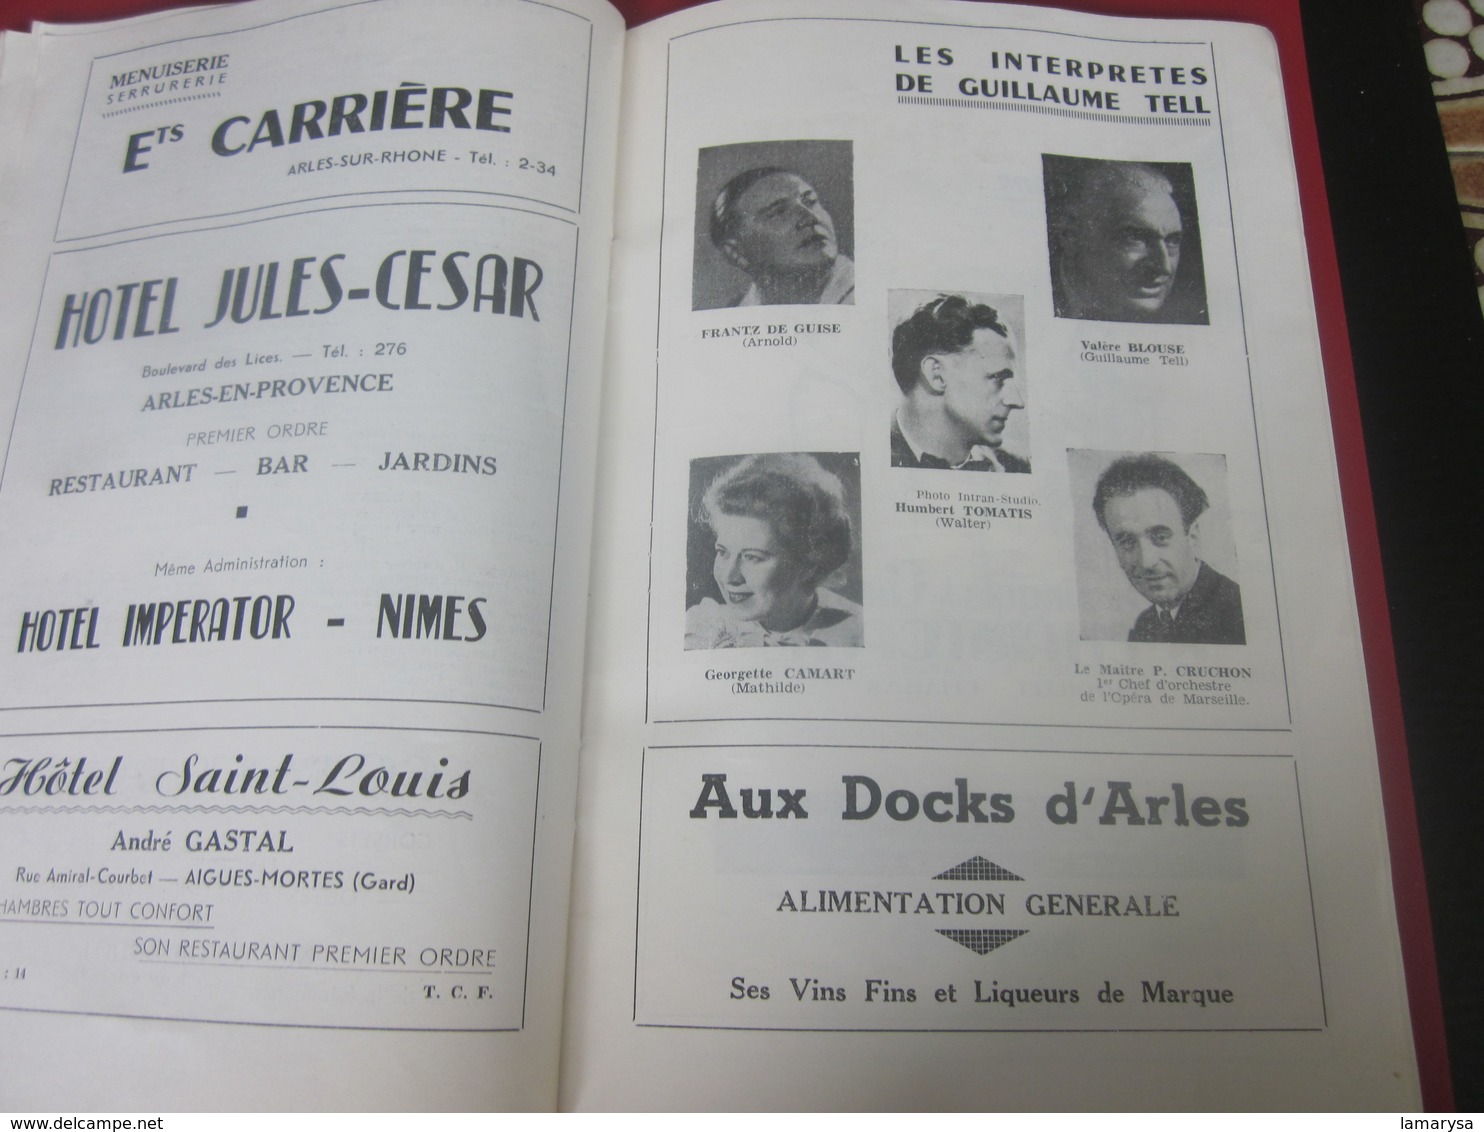 1951-ARLES-PROGRAMME MUSIQUE 7é REGIMENT GENIE MILITAIRE-GALAS ARTISTIQUES-CHORÉGRAPHIQUES-FOLKLORIQUE-CORRIDA-LA FLOTTE